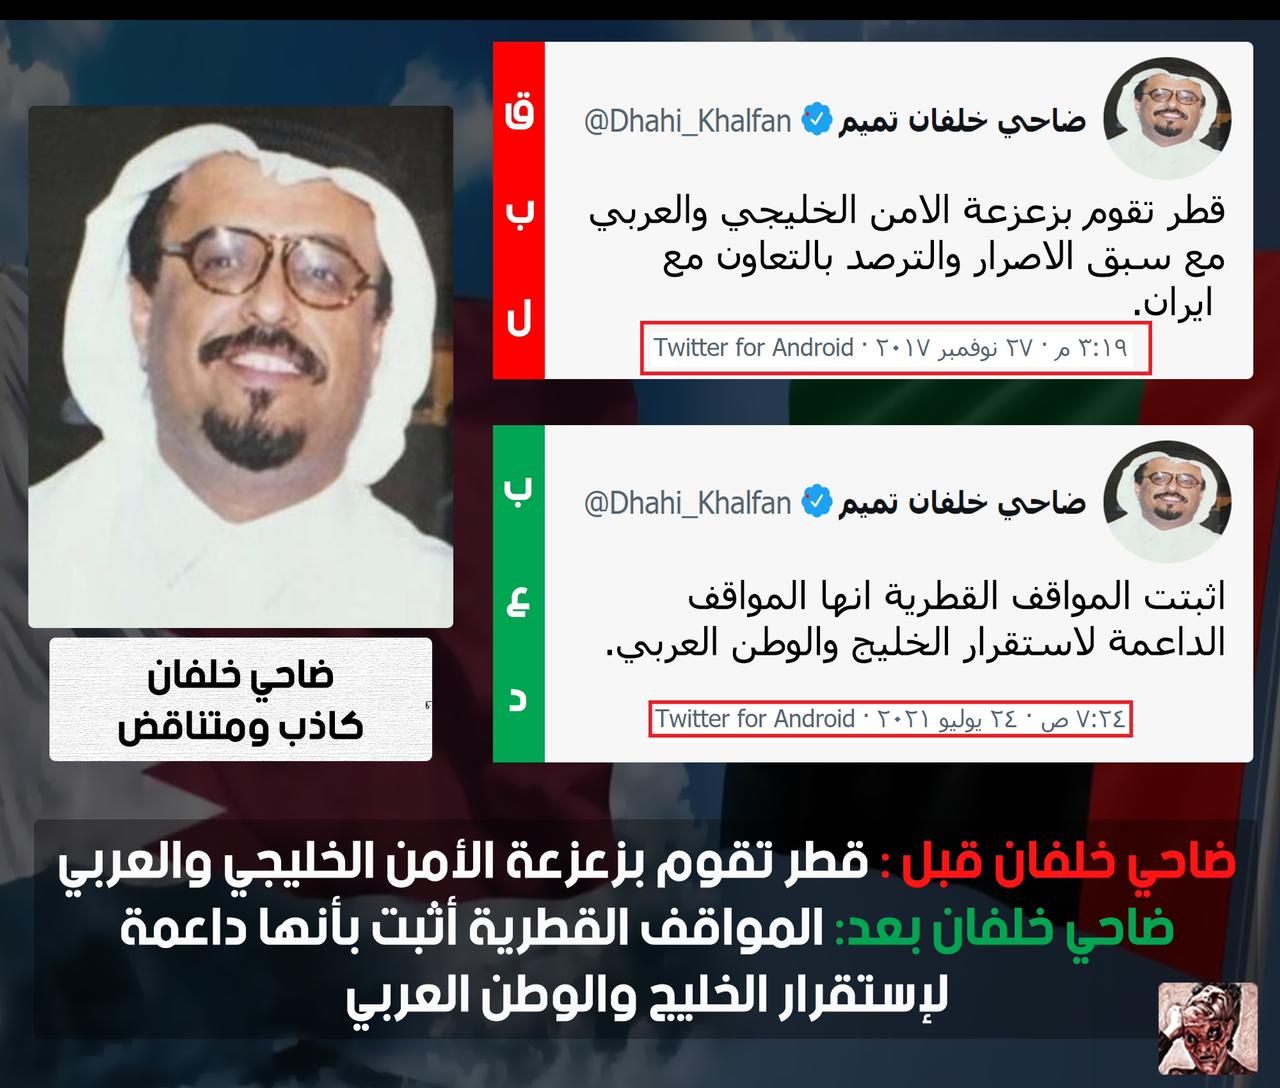 ضاحي خلفان ينشر اعترافات غير مسبوقة عن قطر .. شاهدوا ماذا قال قبل بث “ما خفي أعظم”